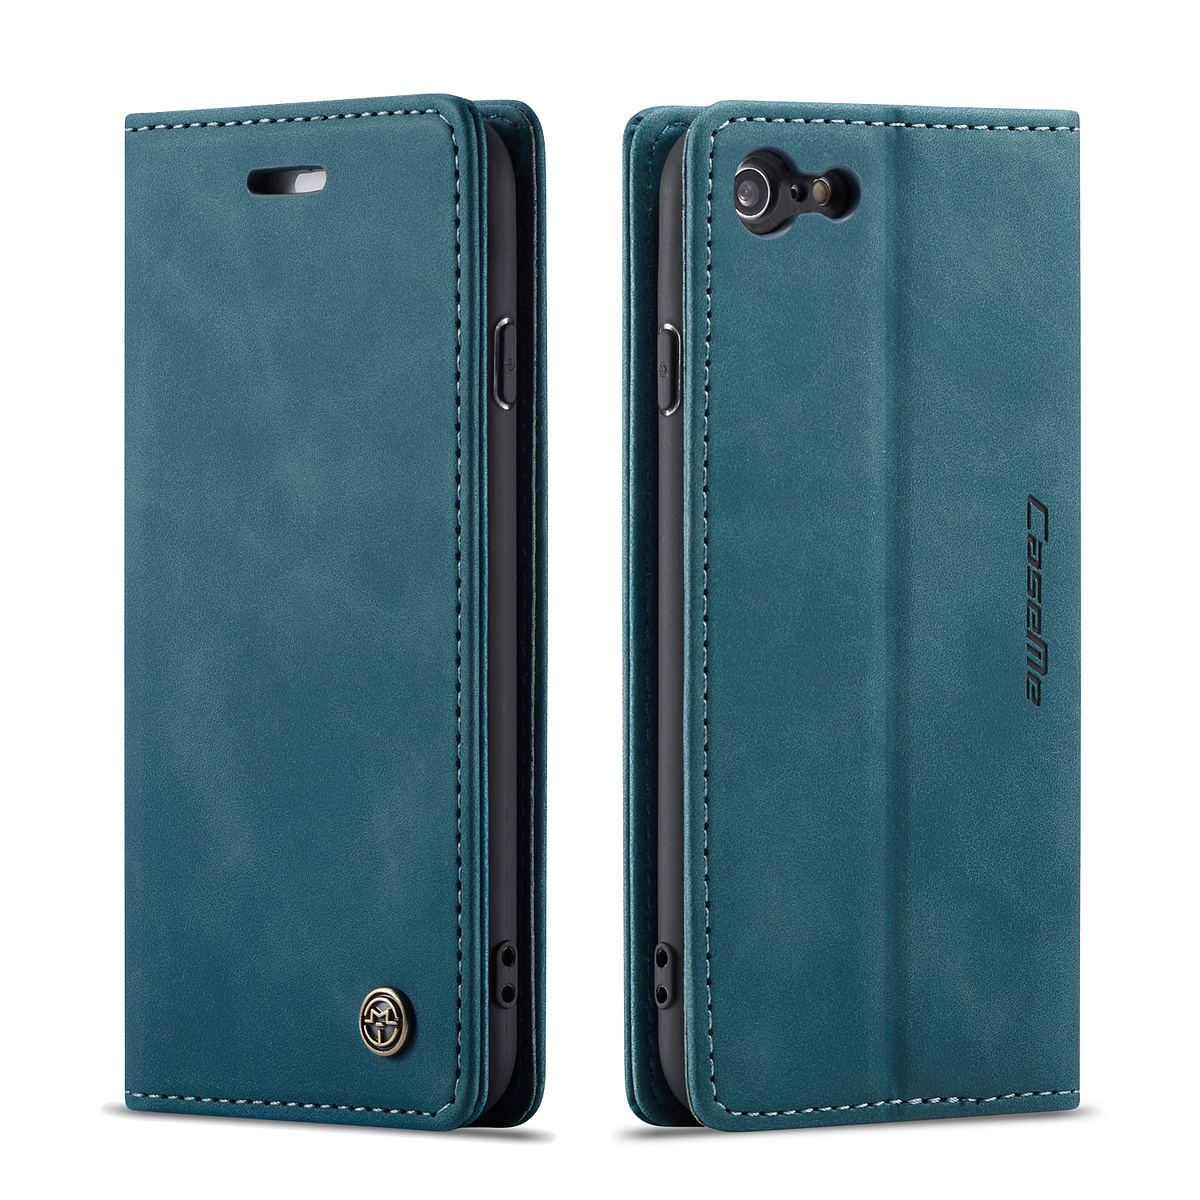 CaseMe plånboksfodral, iPhone 6/6S, blå